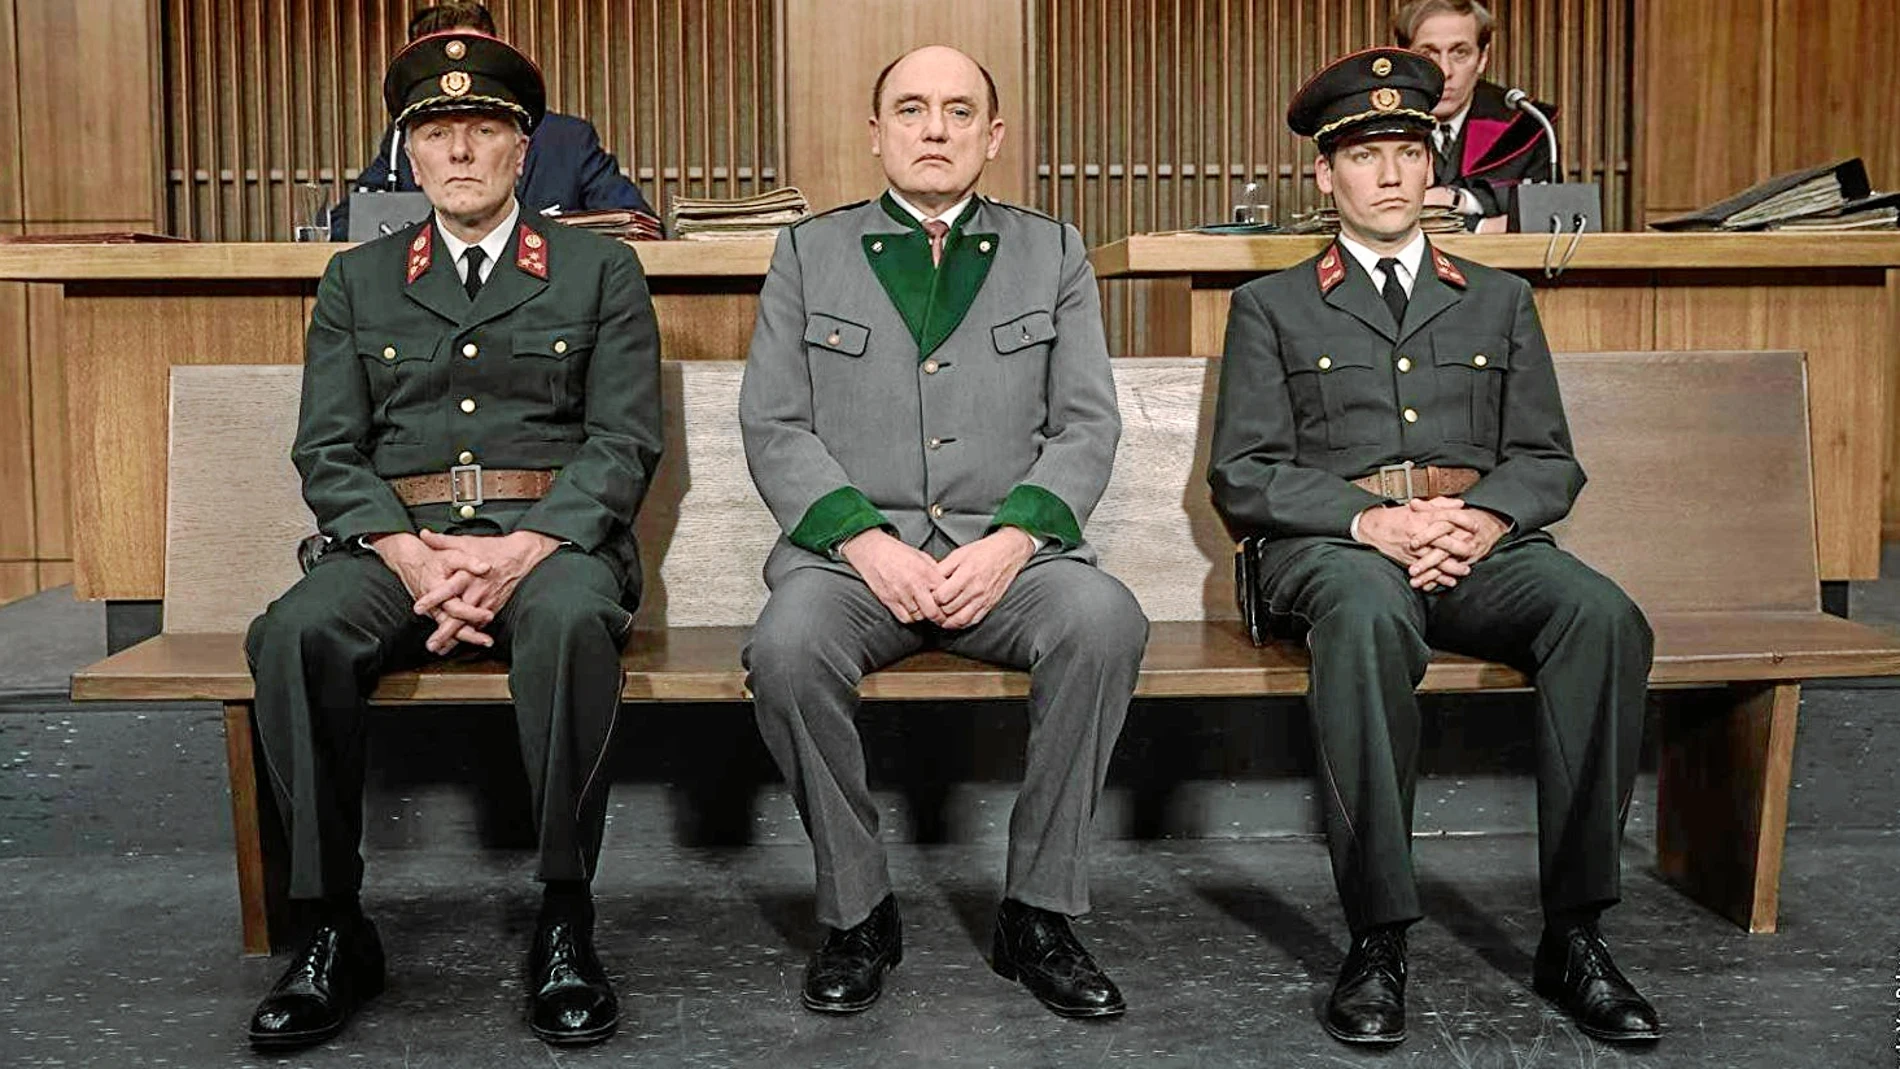 Una imagen de la película dirigida por Christian Frosch que se estrena en España sobre el proceso judicial contra el oficial nazi Franz Murer